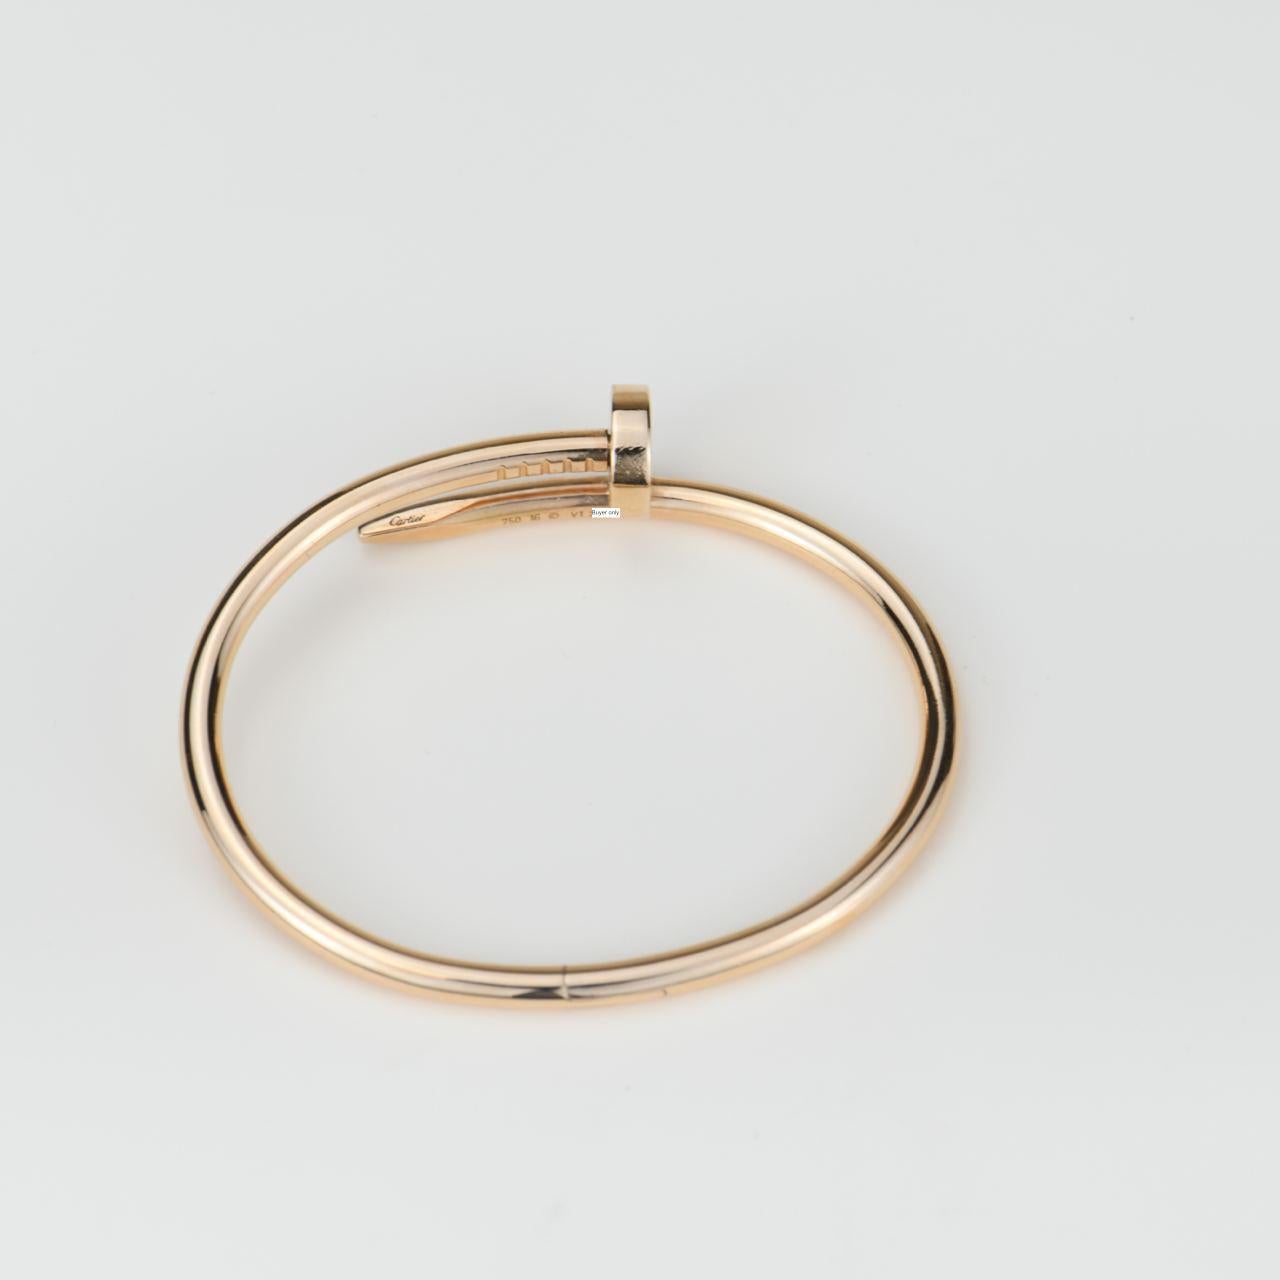 Cartier Juste Un Clou Rose Gold Bracelet Size 16 5